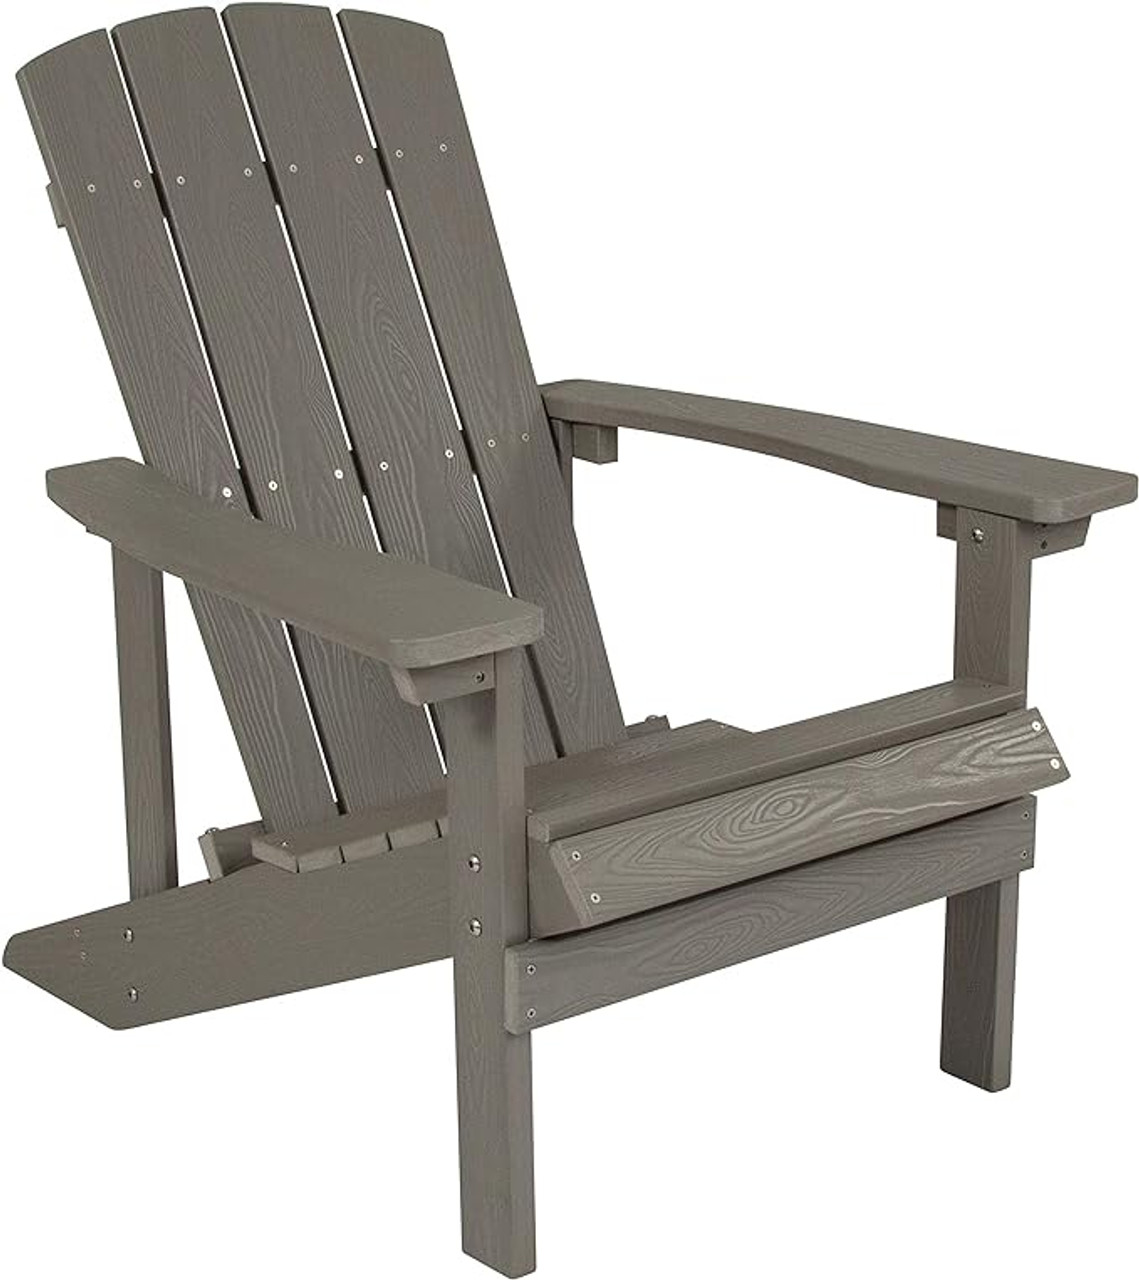 Flash Furniture 35"H, 29 1/2"W Resin, Gray JJ-C14501-LTG-GG Charlestown Adirondack Chair - Chicken Pieces